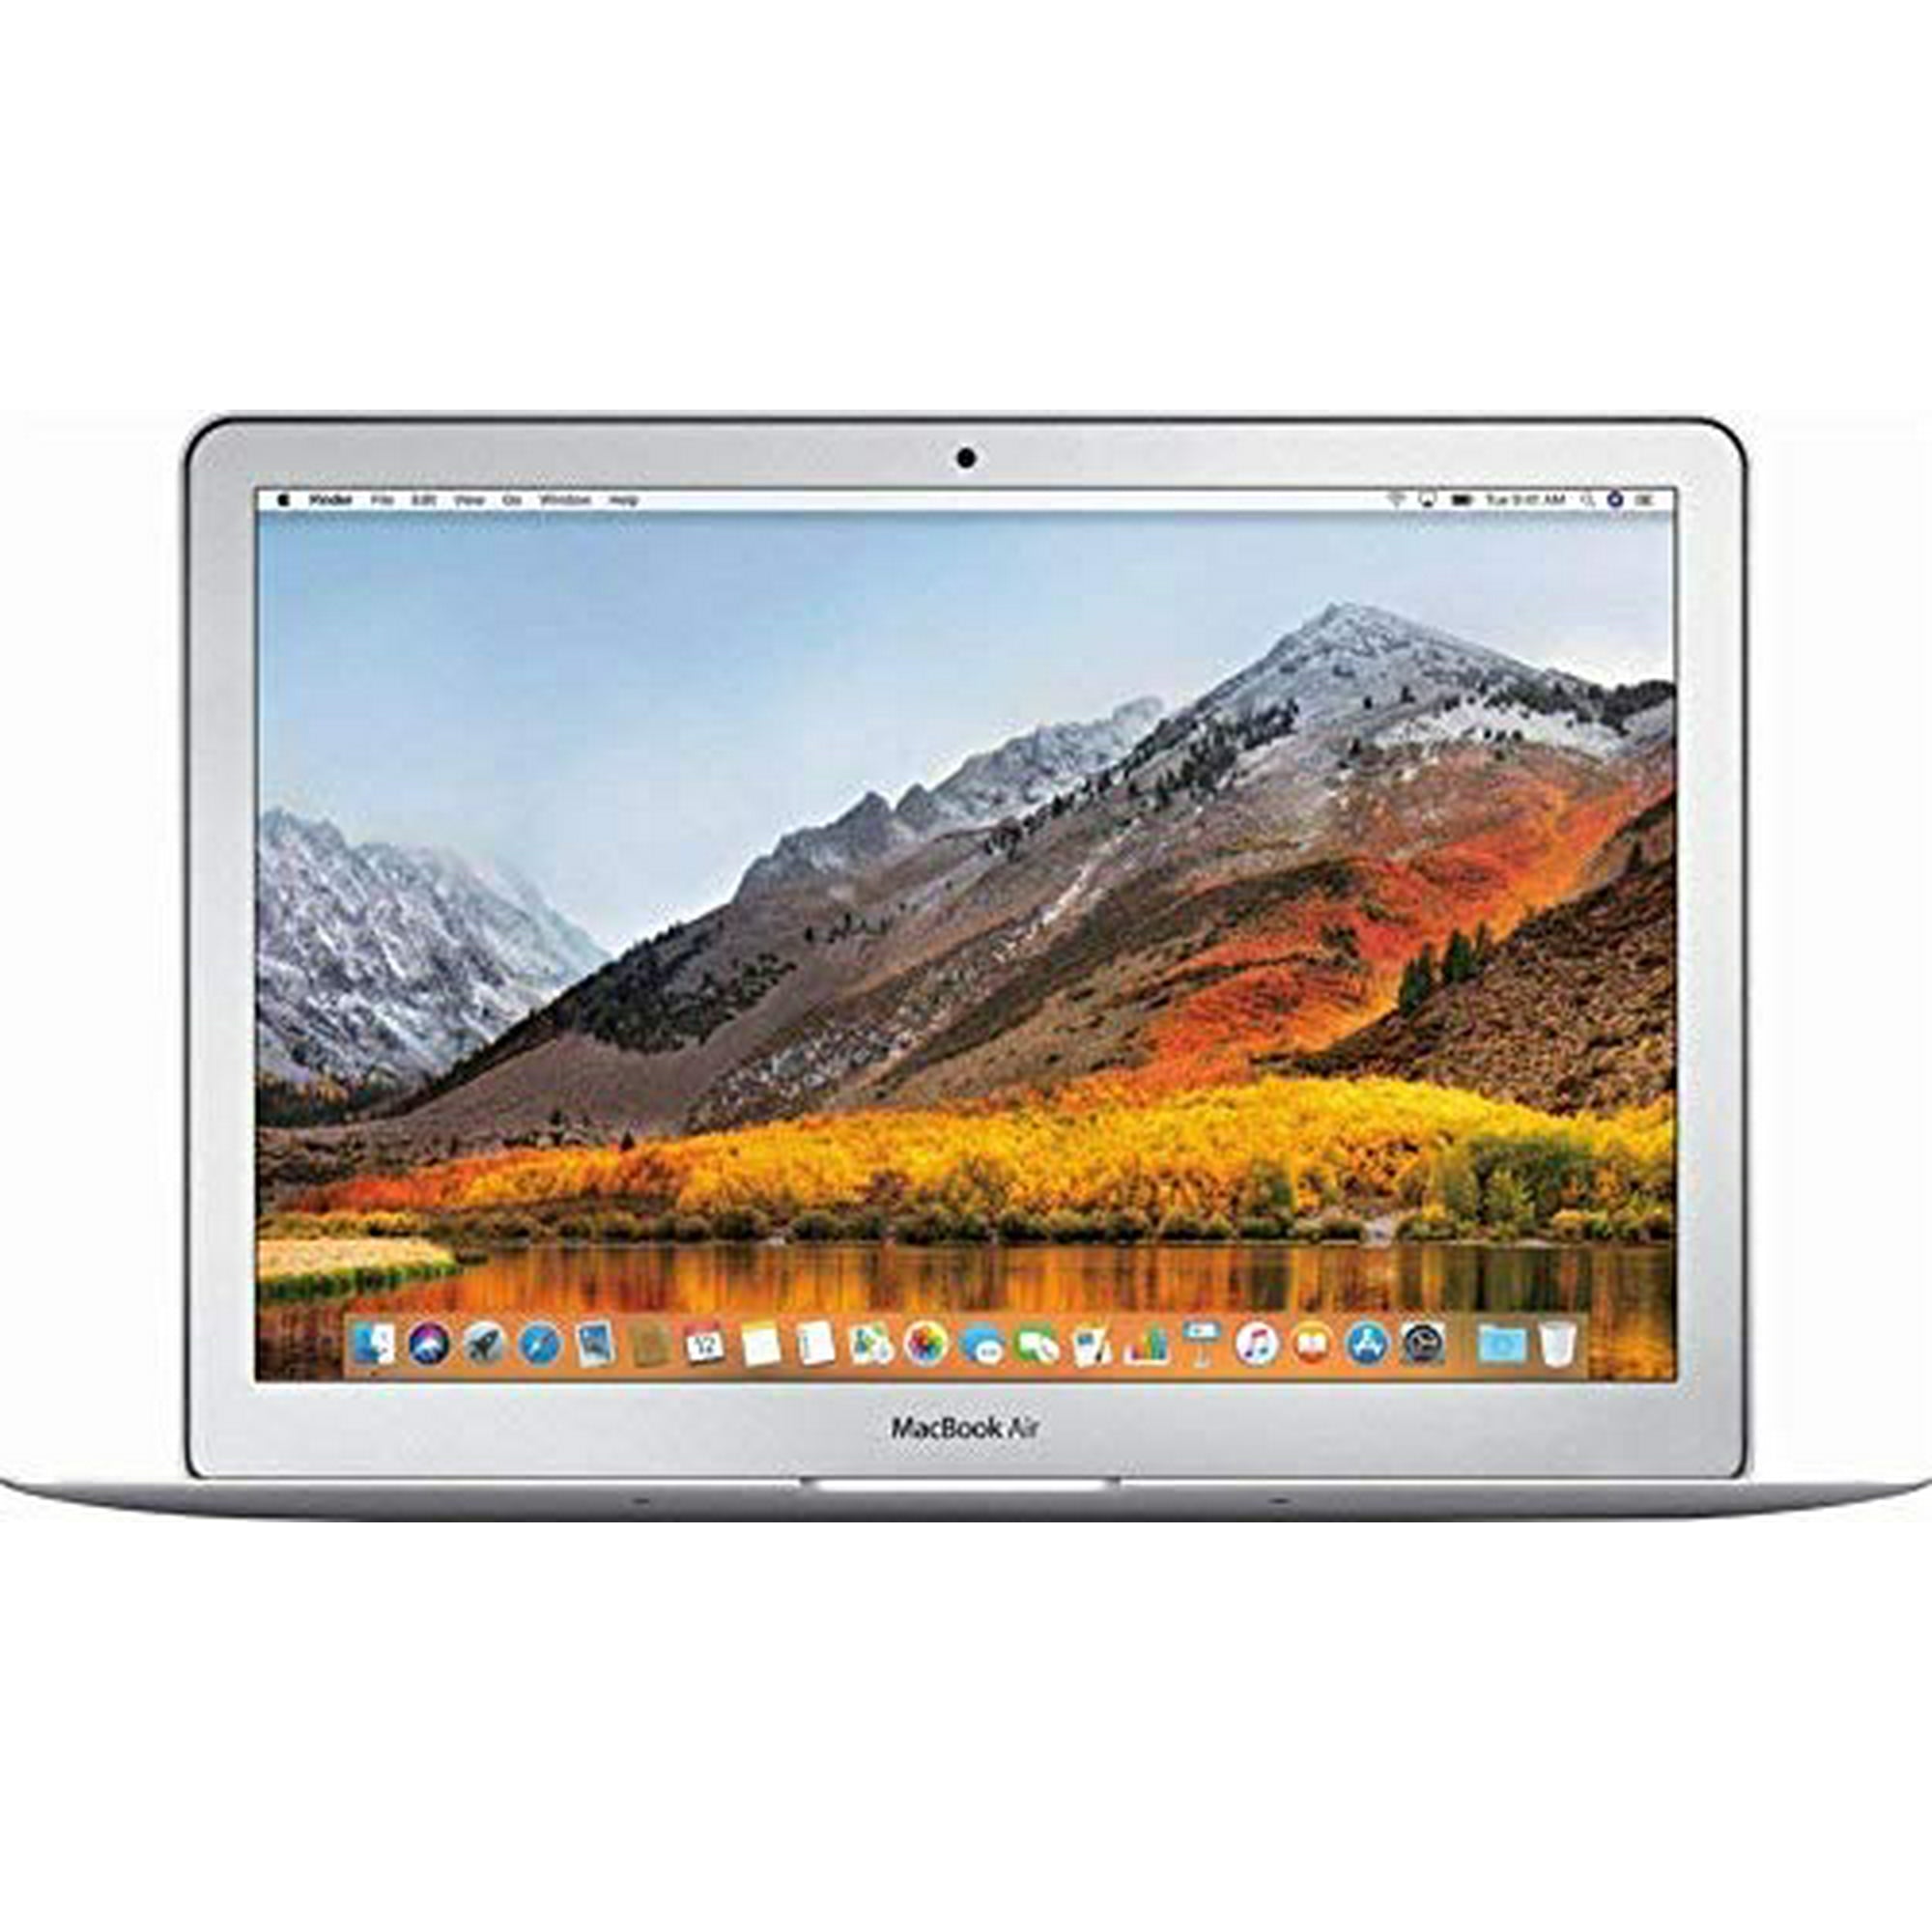 Restored Apple MacBook Air (13-inch, 1.8GHz dual-core Intel Core 